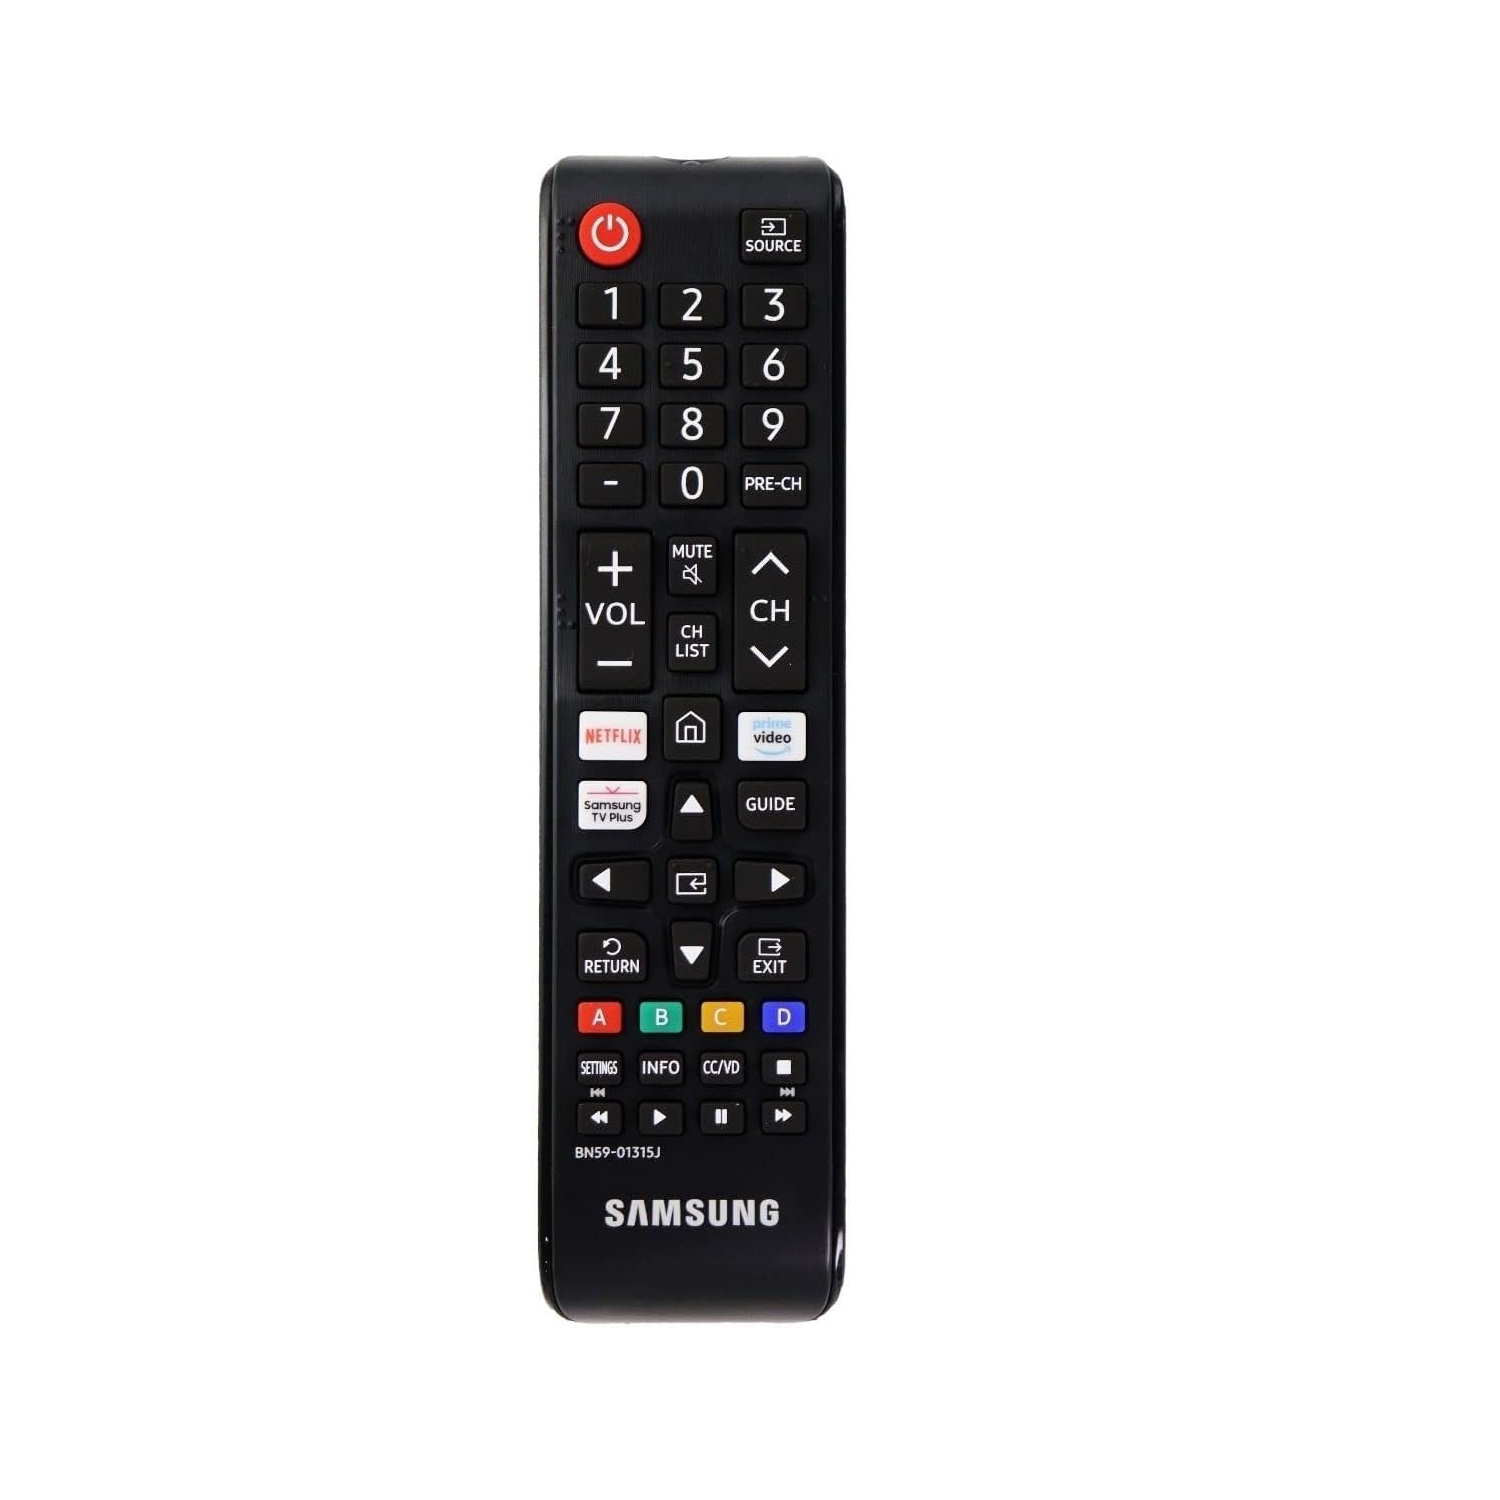 Refurbished (Good) Samsung Original Remote BN59-01315J for Samsung Smart TV